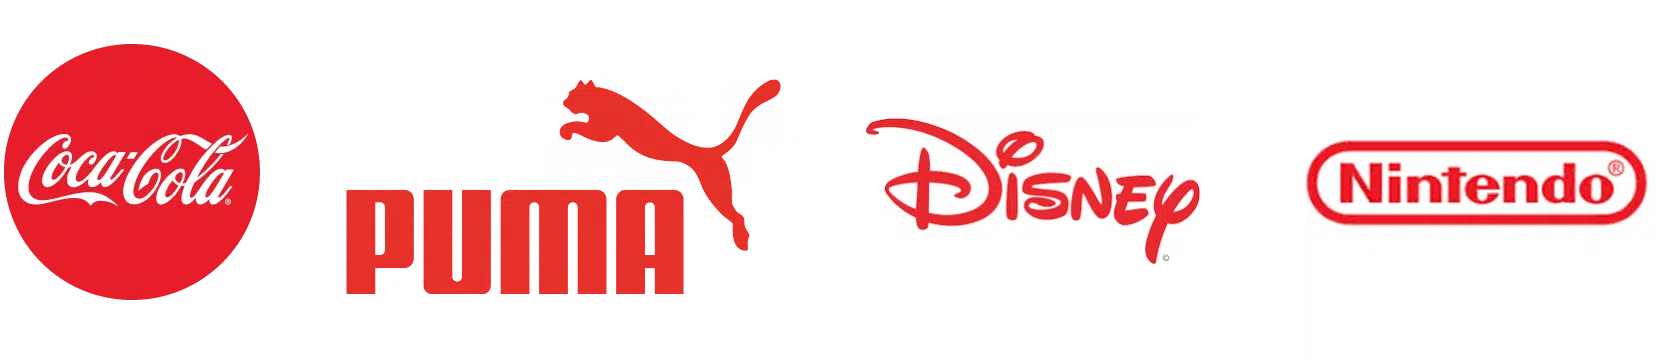 exemple de logos rouges